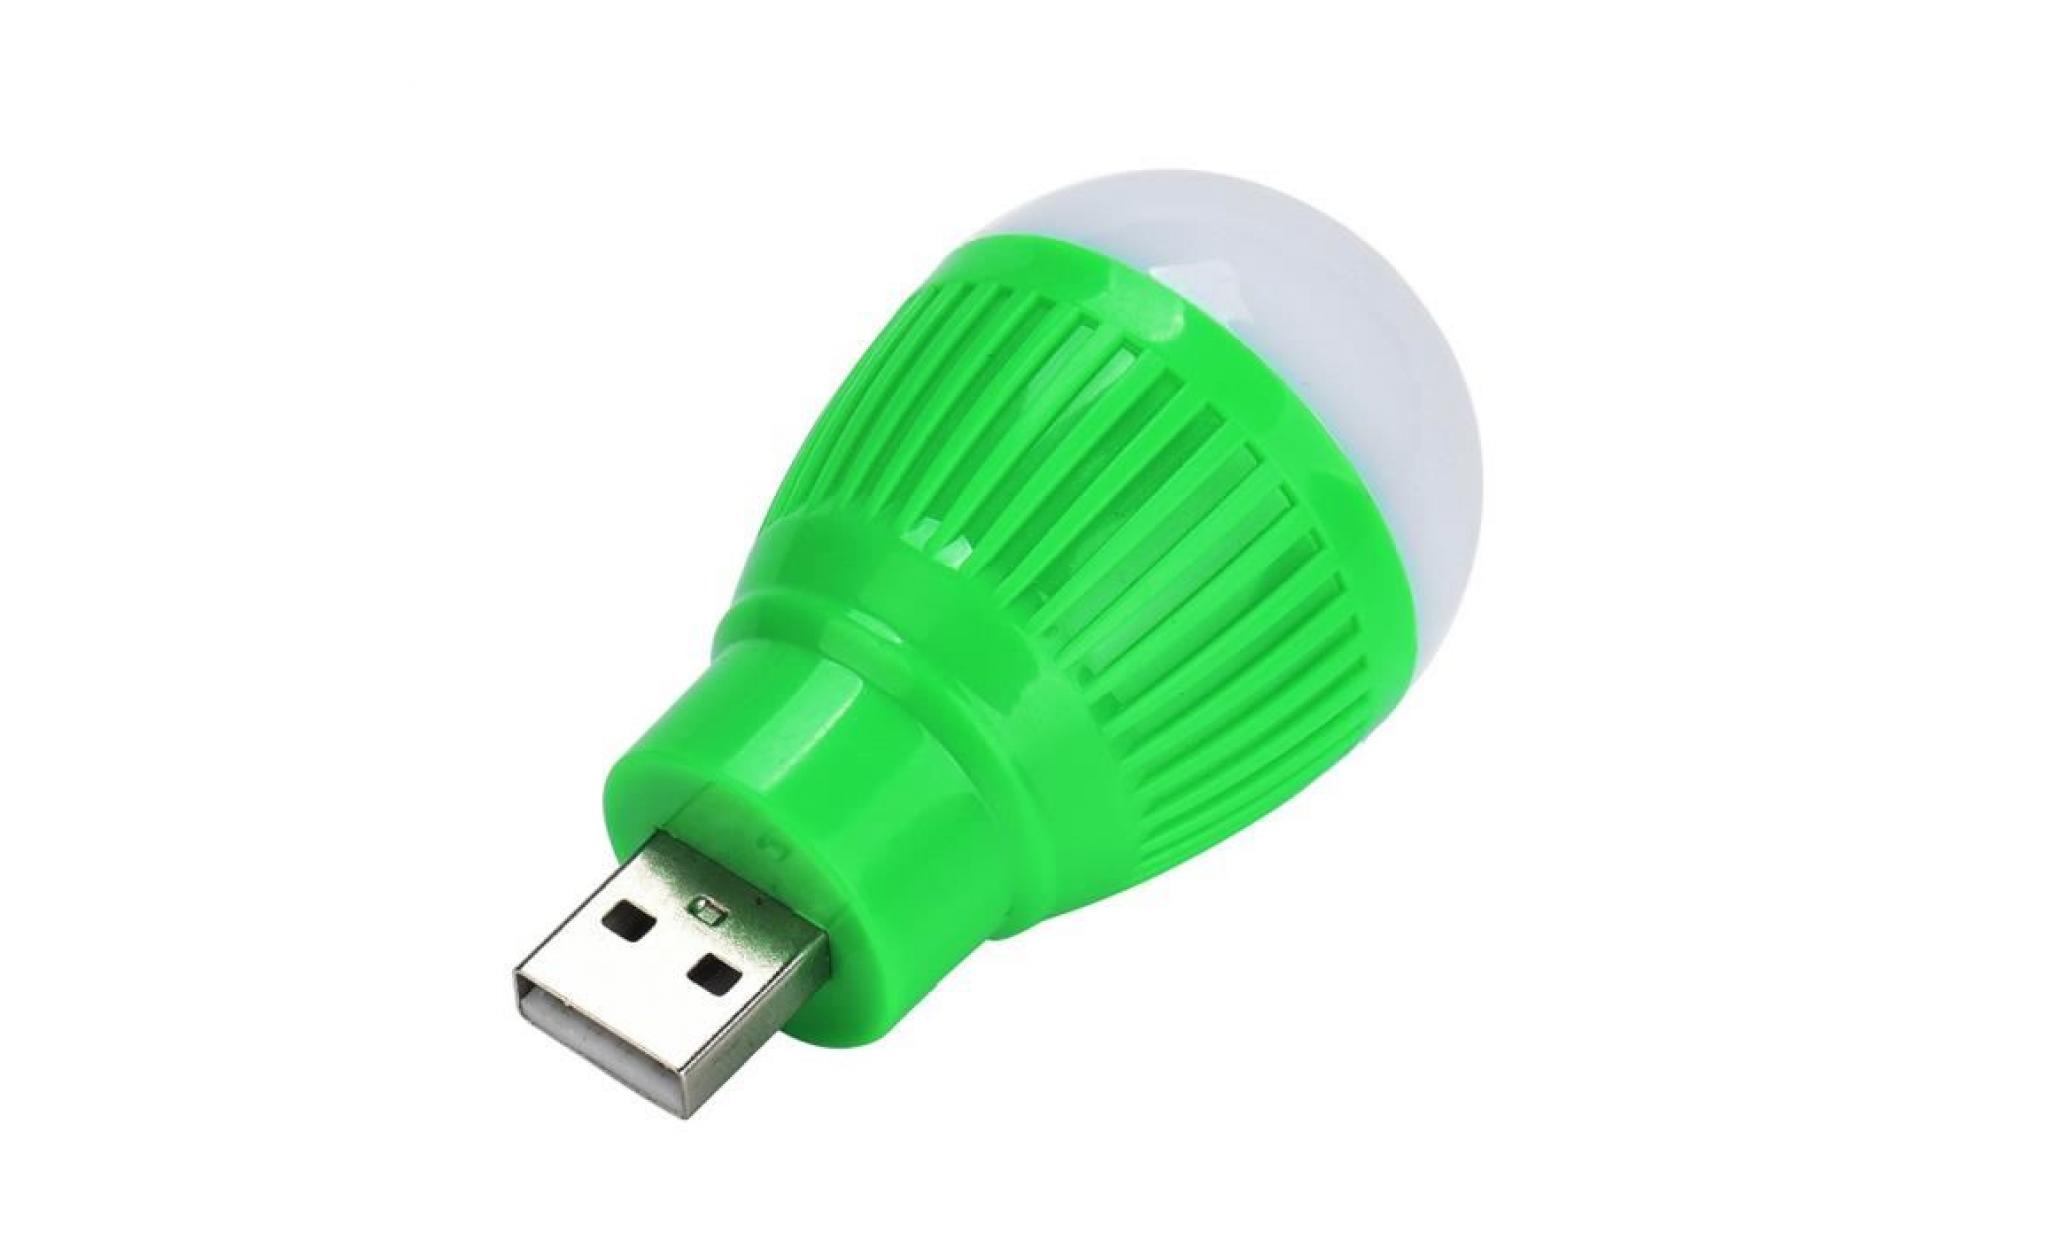 nouveau lampe led portable usb light pour ordinateur portable pc gn ordinateur ha457 pas cher